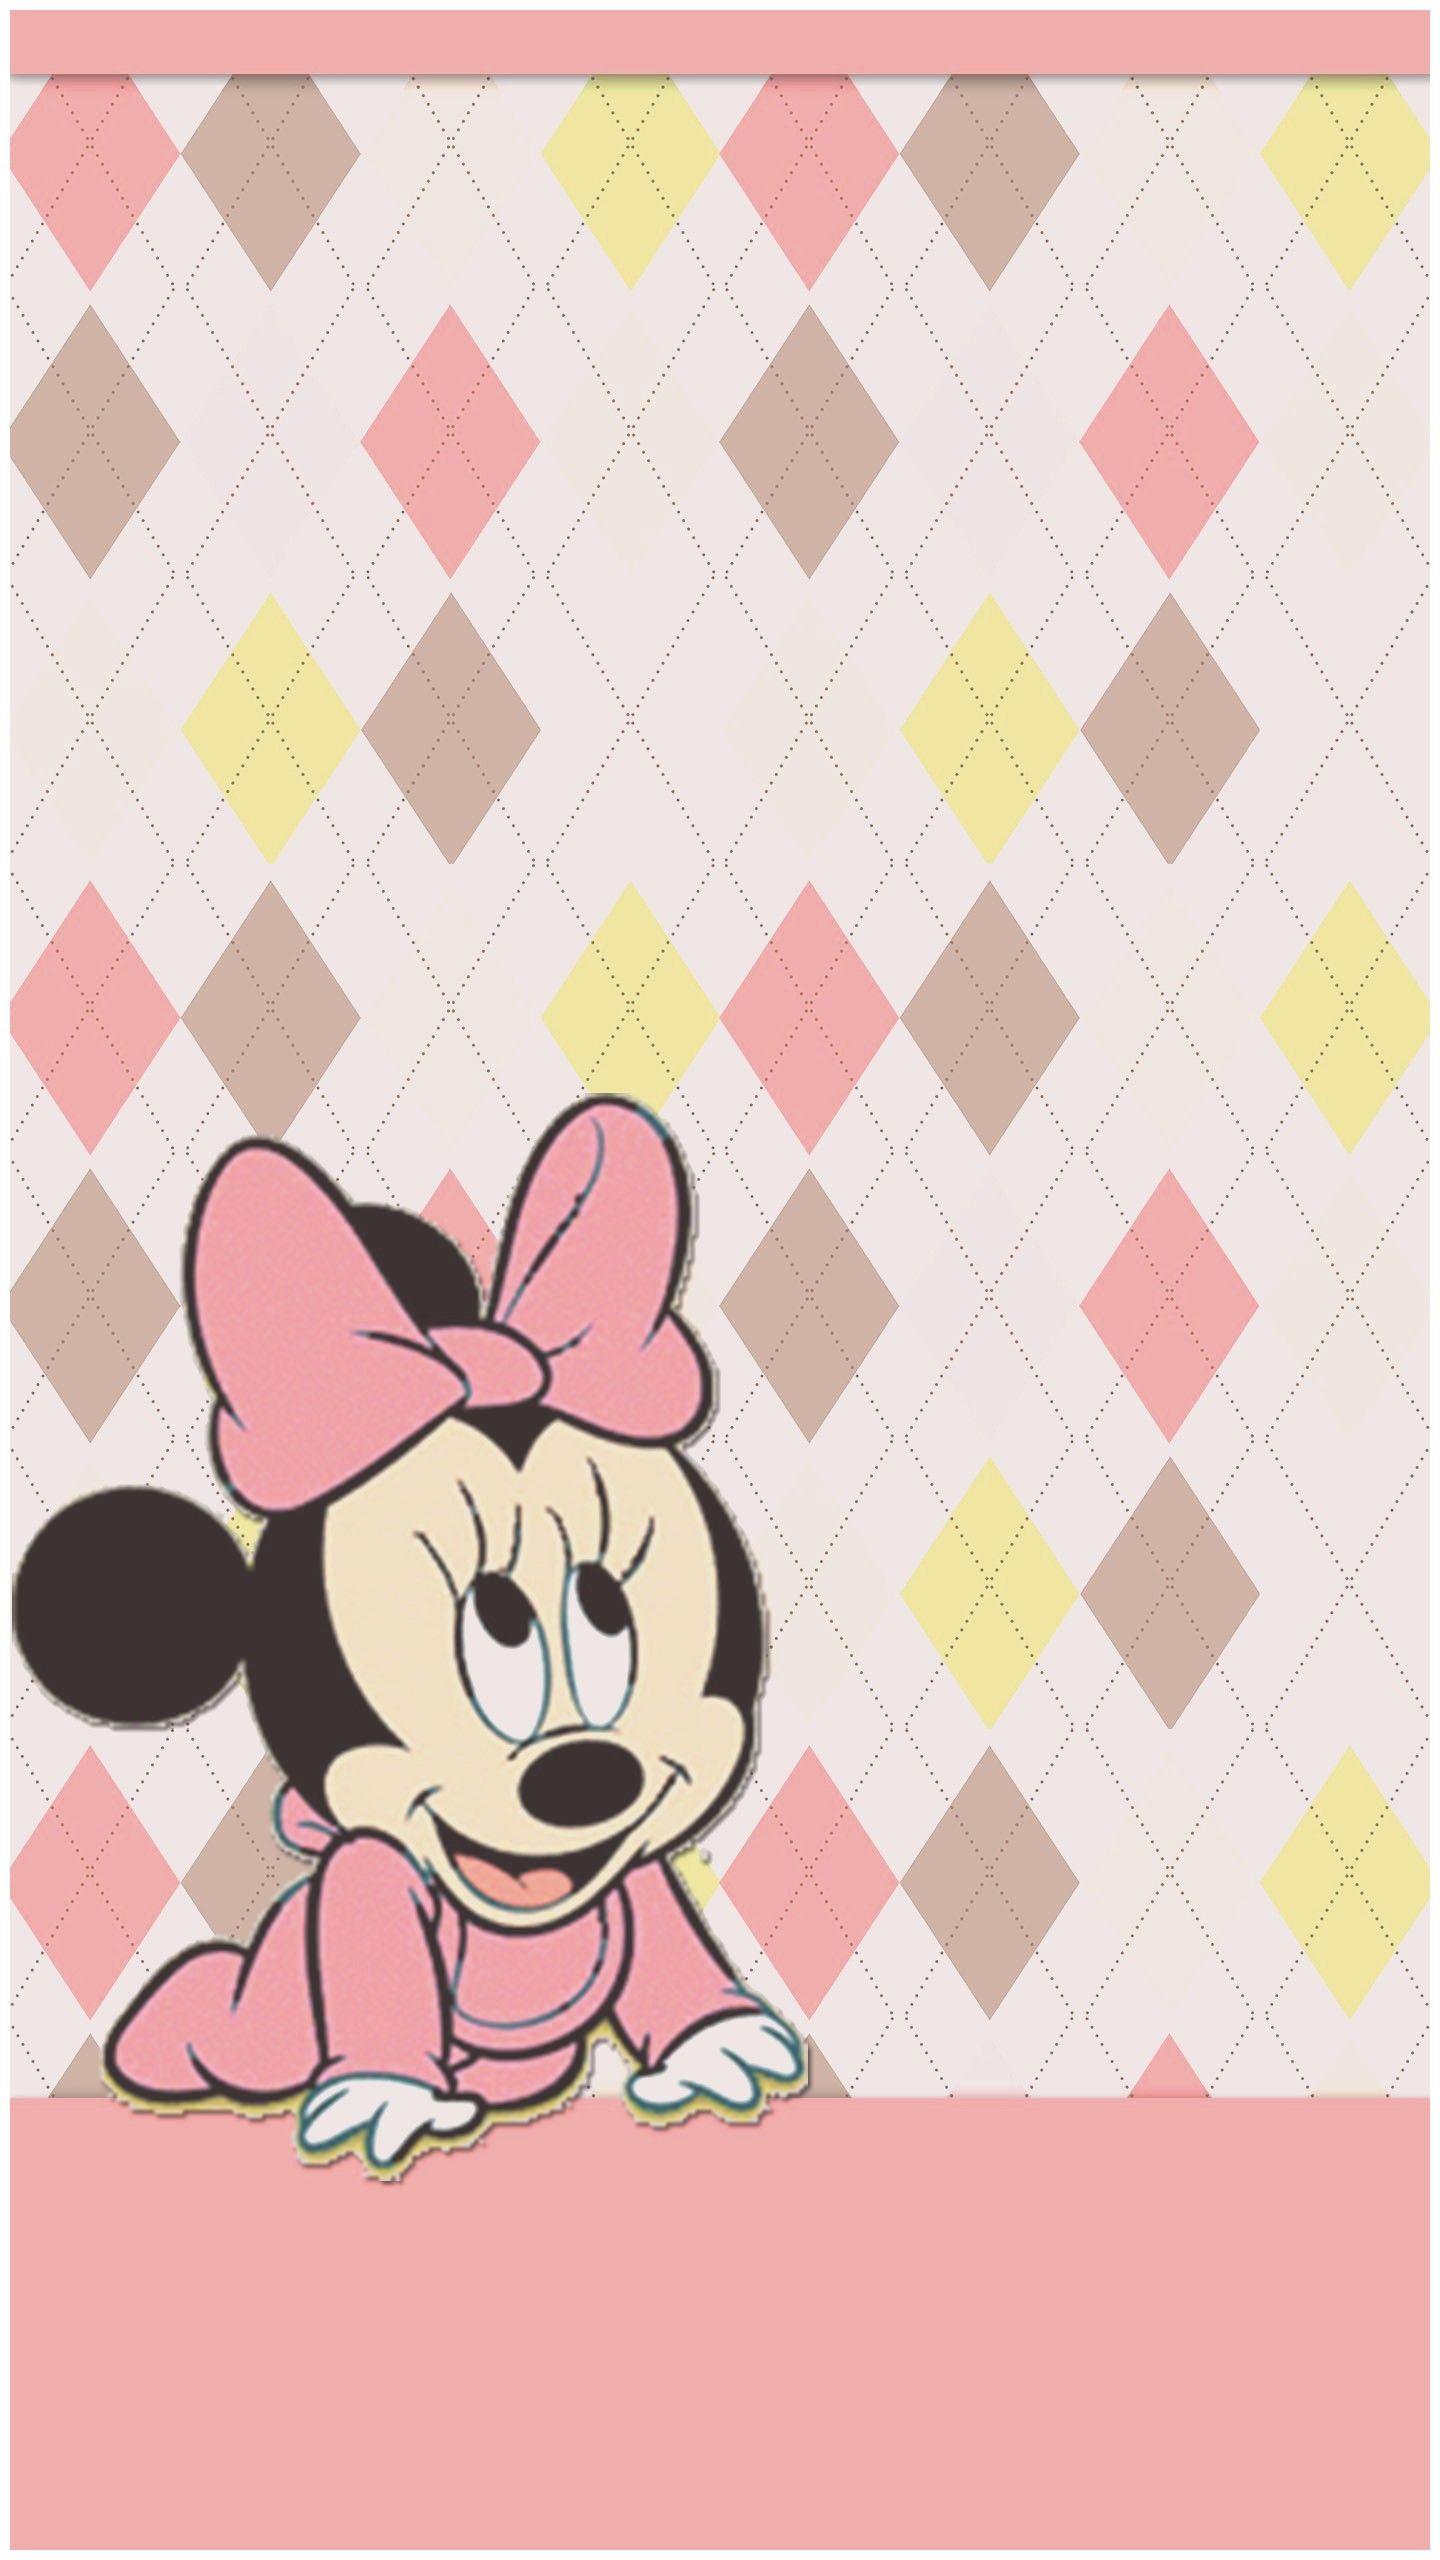 Penggiat Sosial: [View 43+] Cute Disney Wallpaper Iphone Rose Gold Cute